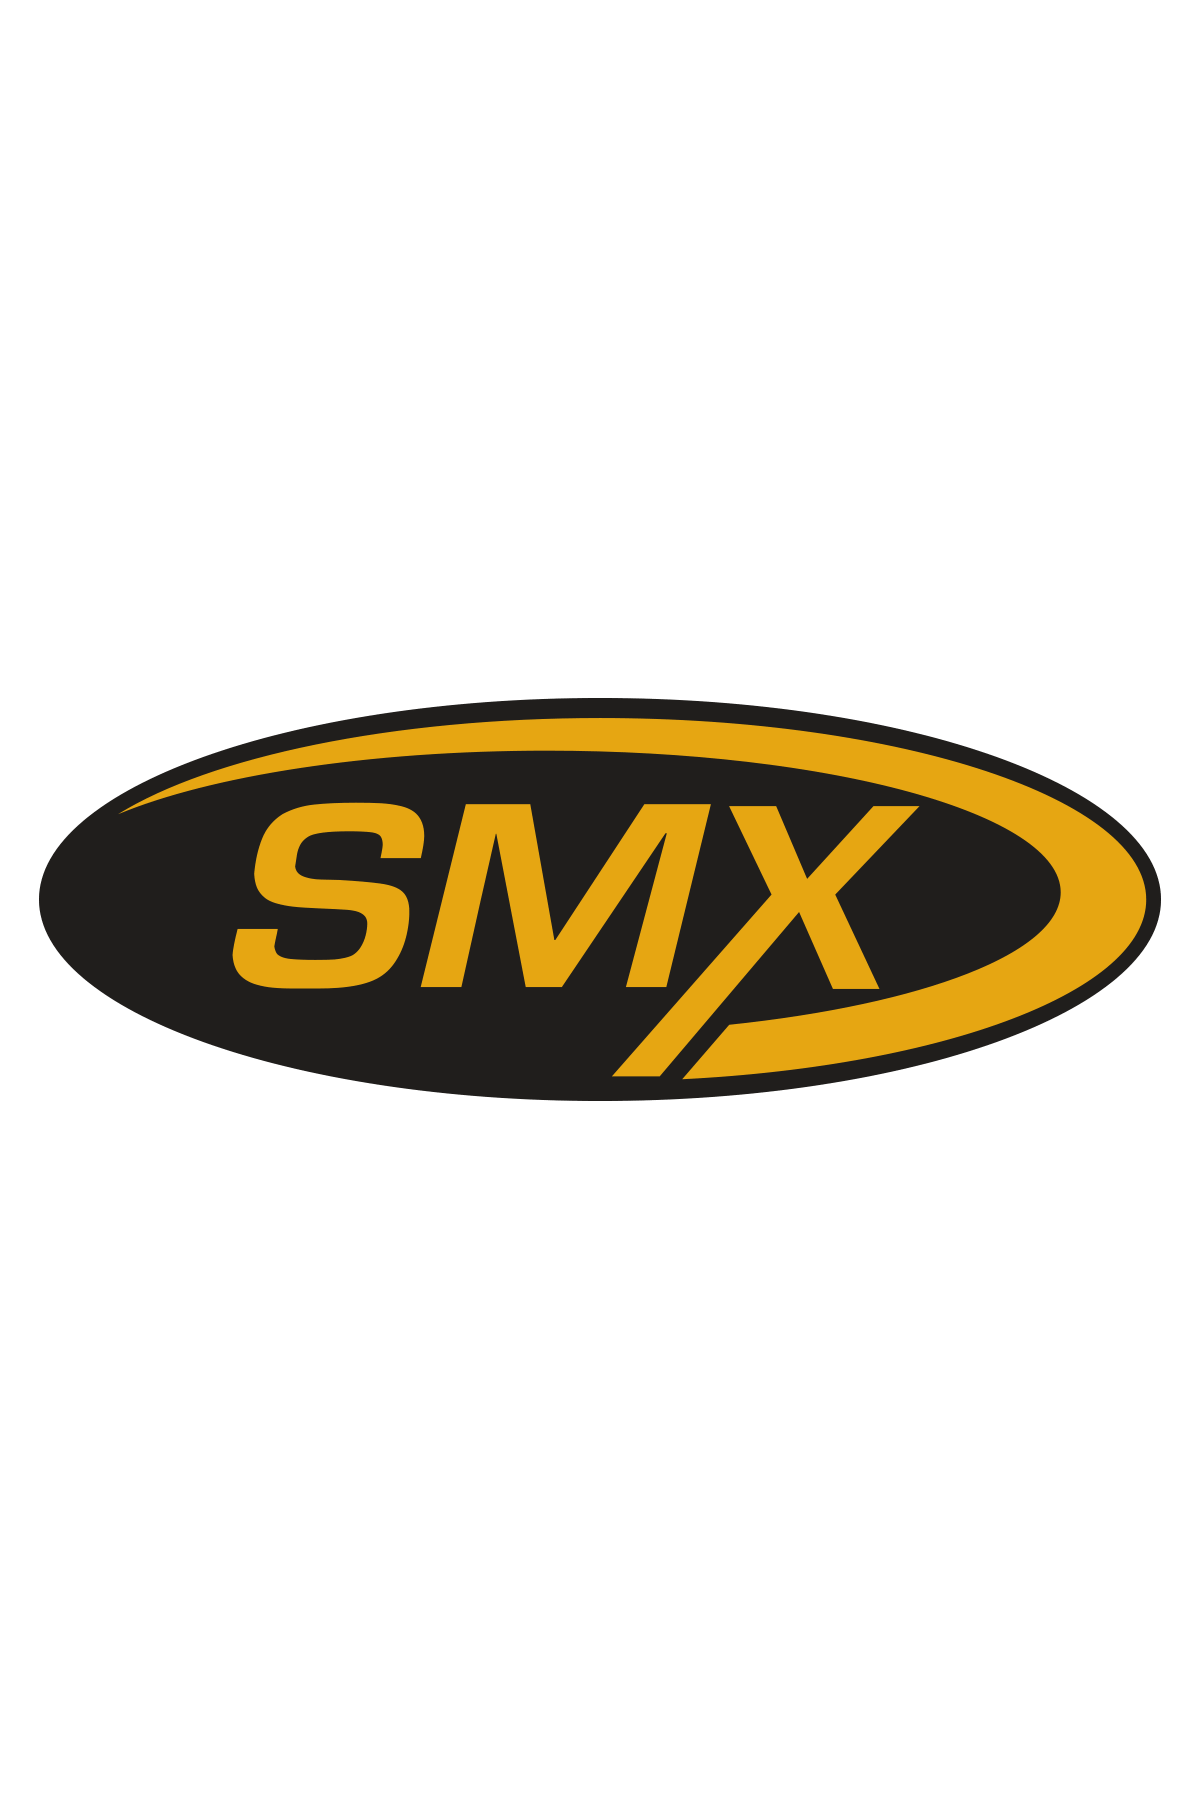 SMX İnox Temizleyici / Krom Temizleyici / Nikelaj Temizleyici 5 LT